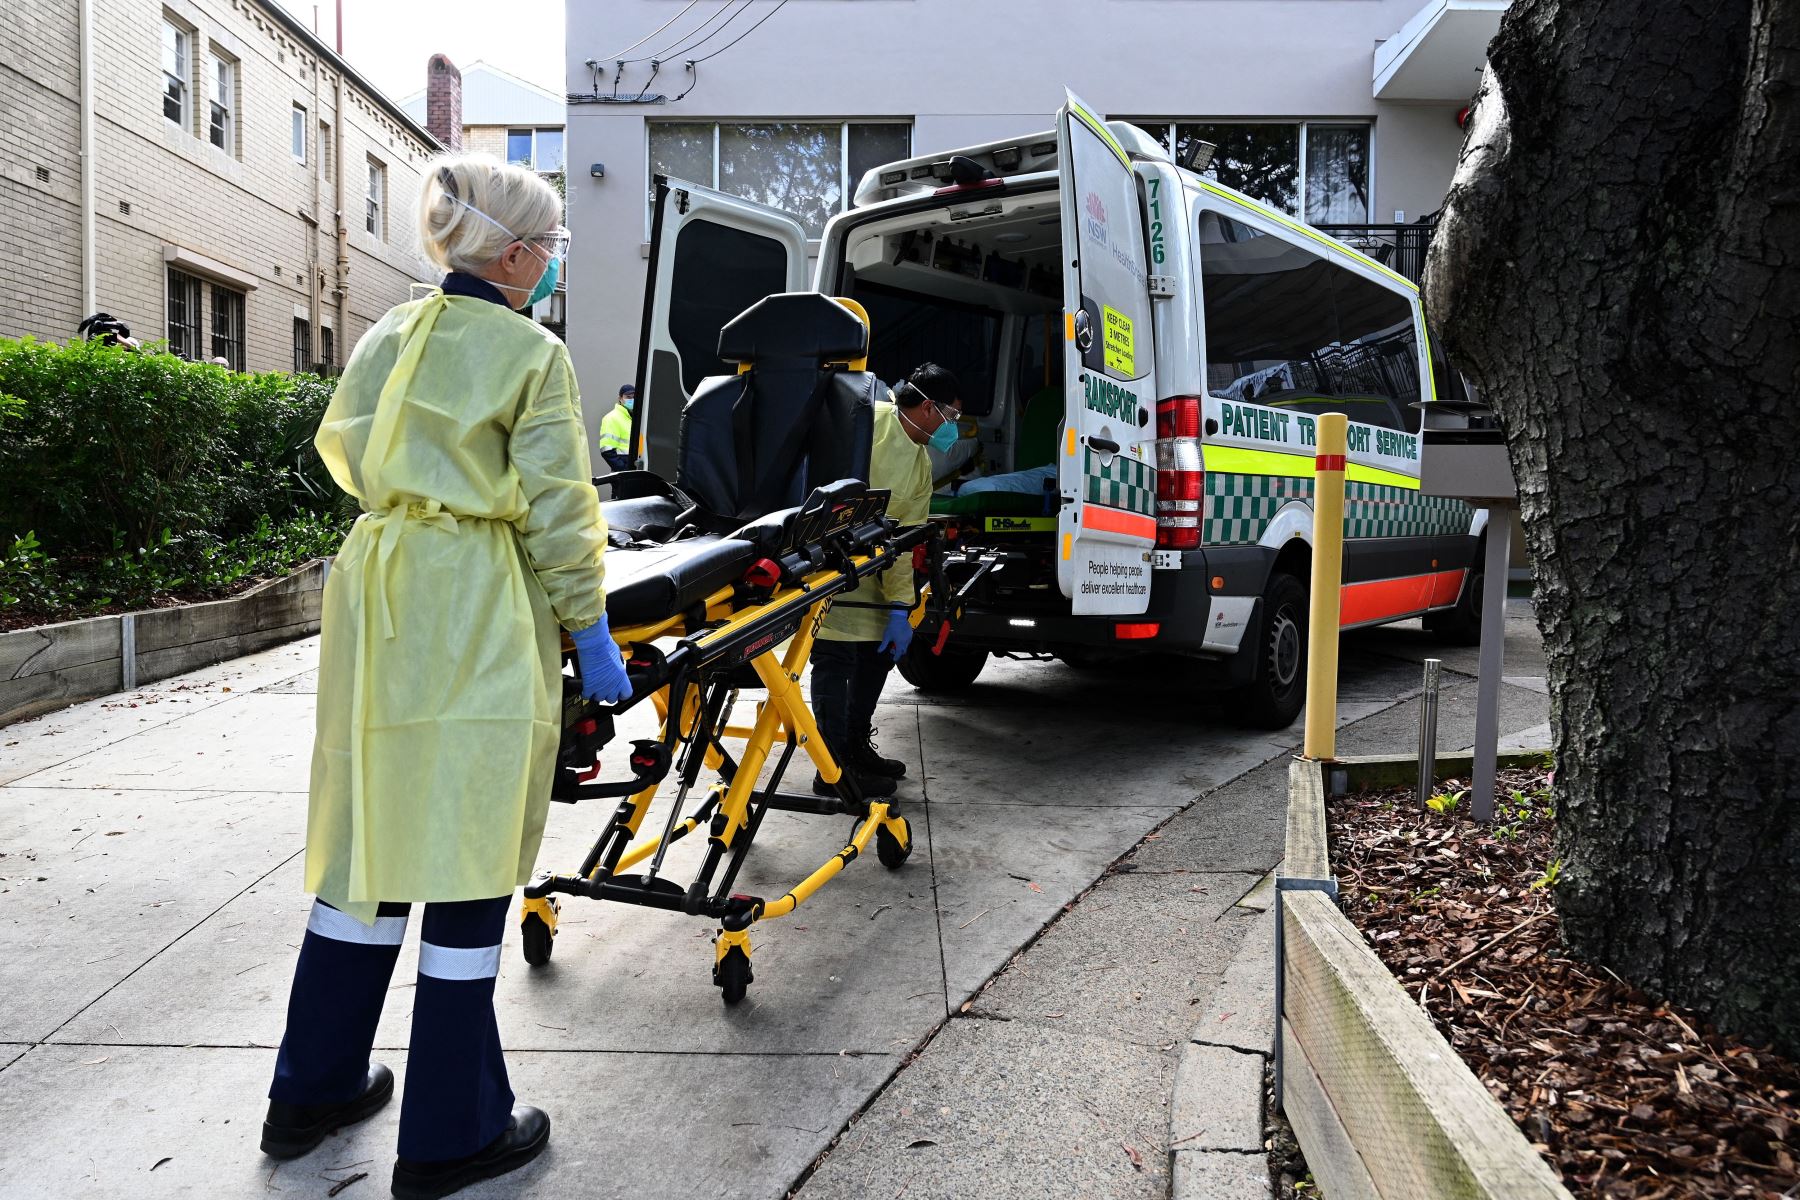 Los trabajadores de la salud sacan camillas de una ambulancia en el Centro de Ancianos de Ancianos Hardi en el suburbio de Summers Hill en Sydney, después de que se reportaron al menos 12 casos de infecciones por Covid-19 en la instalación.
Foto: AFP